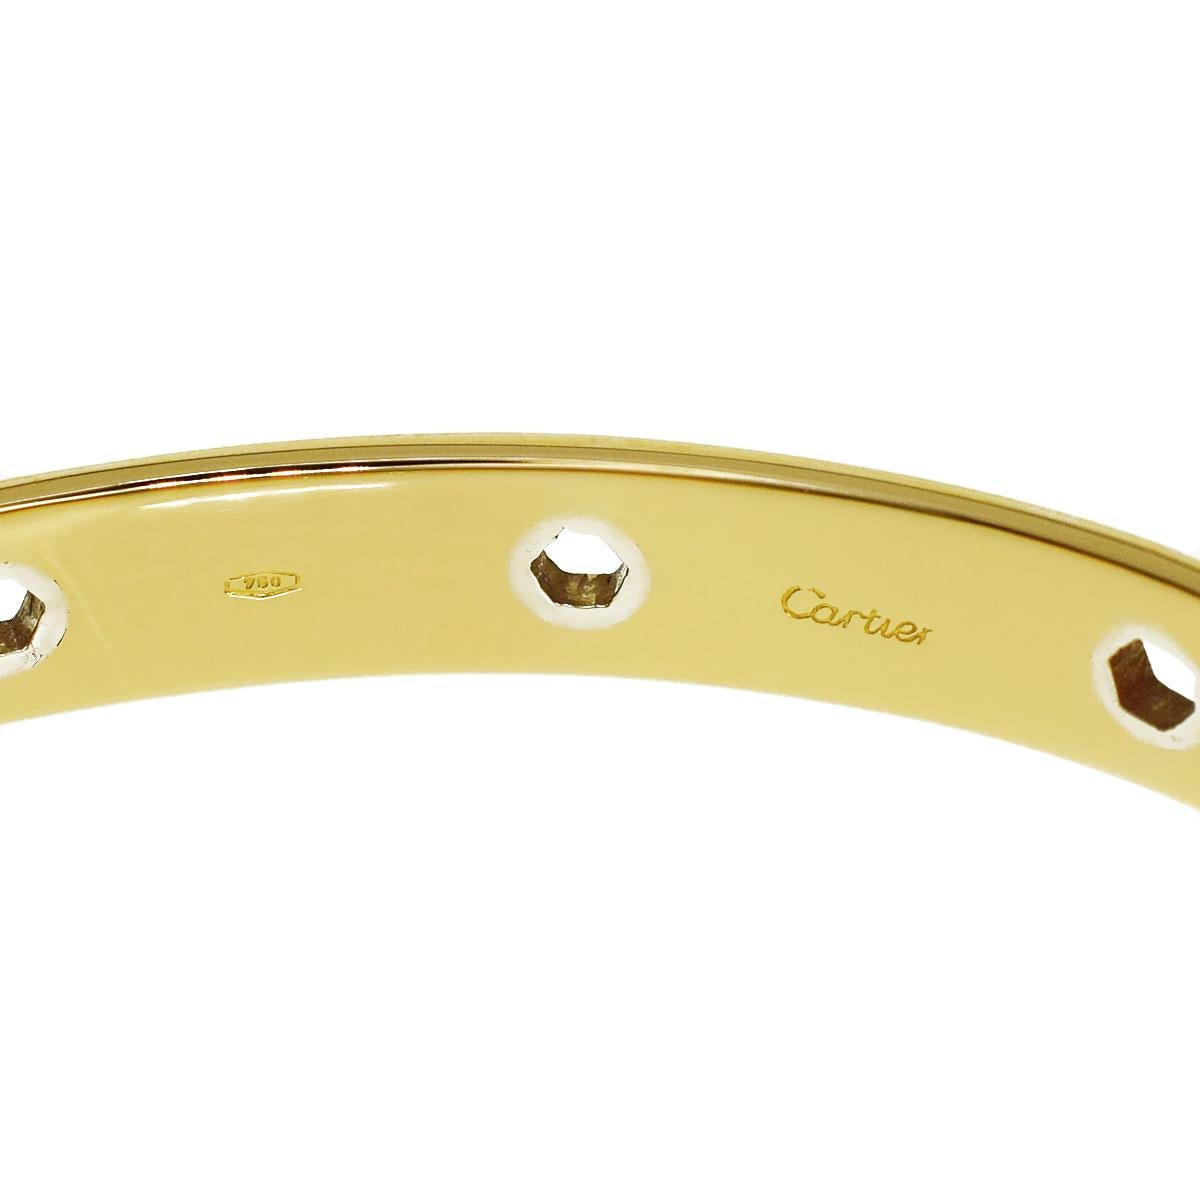 Un bracelet bangle en or jaune de la série Love de Cartier, incroyablement rare, présentant des motifs hexagonaux en or blanc incrustés dans de l'or jaune 18 carats. Le bracelet mesure 16cm, 6.29 